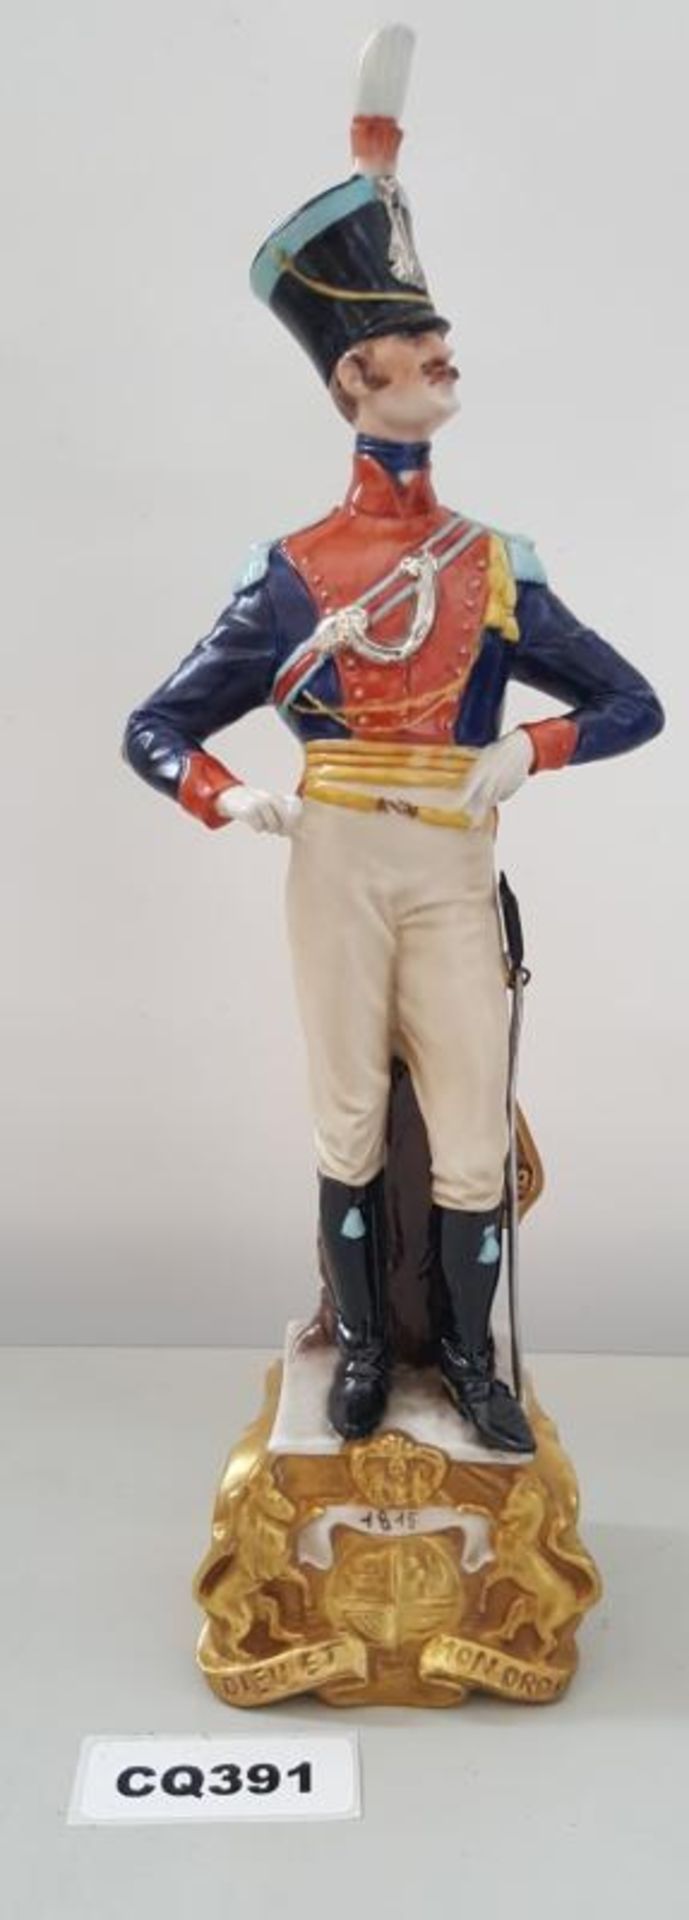 1 x Rare Italian Capodimonte Porcelain Bruno Merli Soldiers Figurines 1815 - Ref CQ391 E